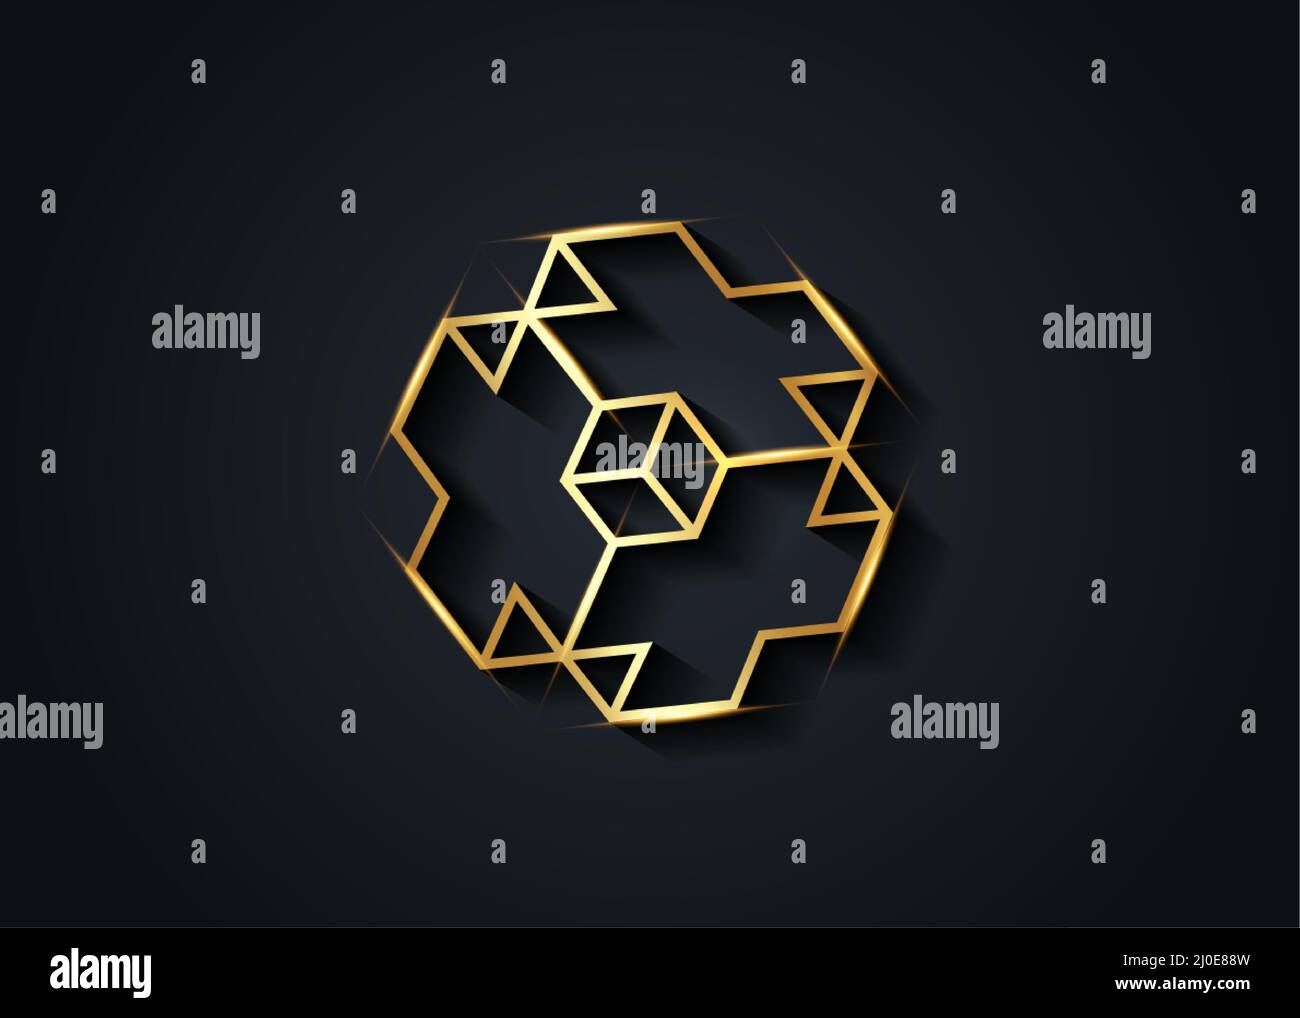 Icône en forme de cube en or 3D Necker. Modèle de conception de logo en forme de cube Isométrique de luxe doré. Symbole de la science, de la médecine ou de la technologie. Vecteur commercial isolé Illustration de Vecteur